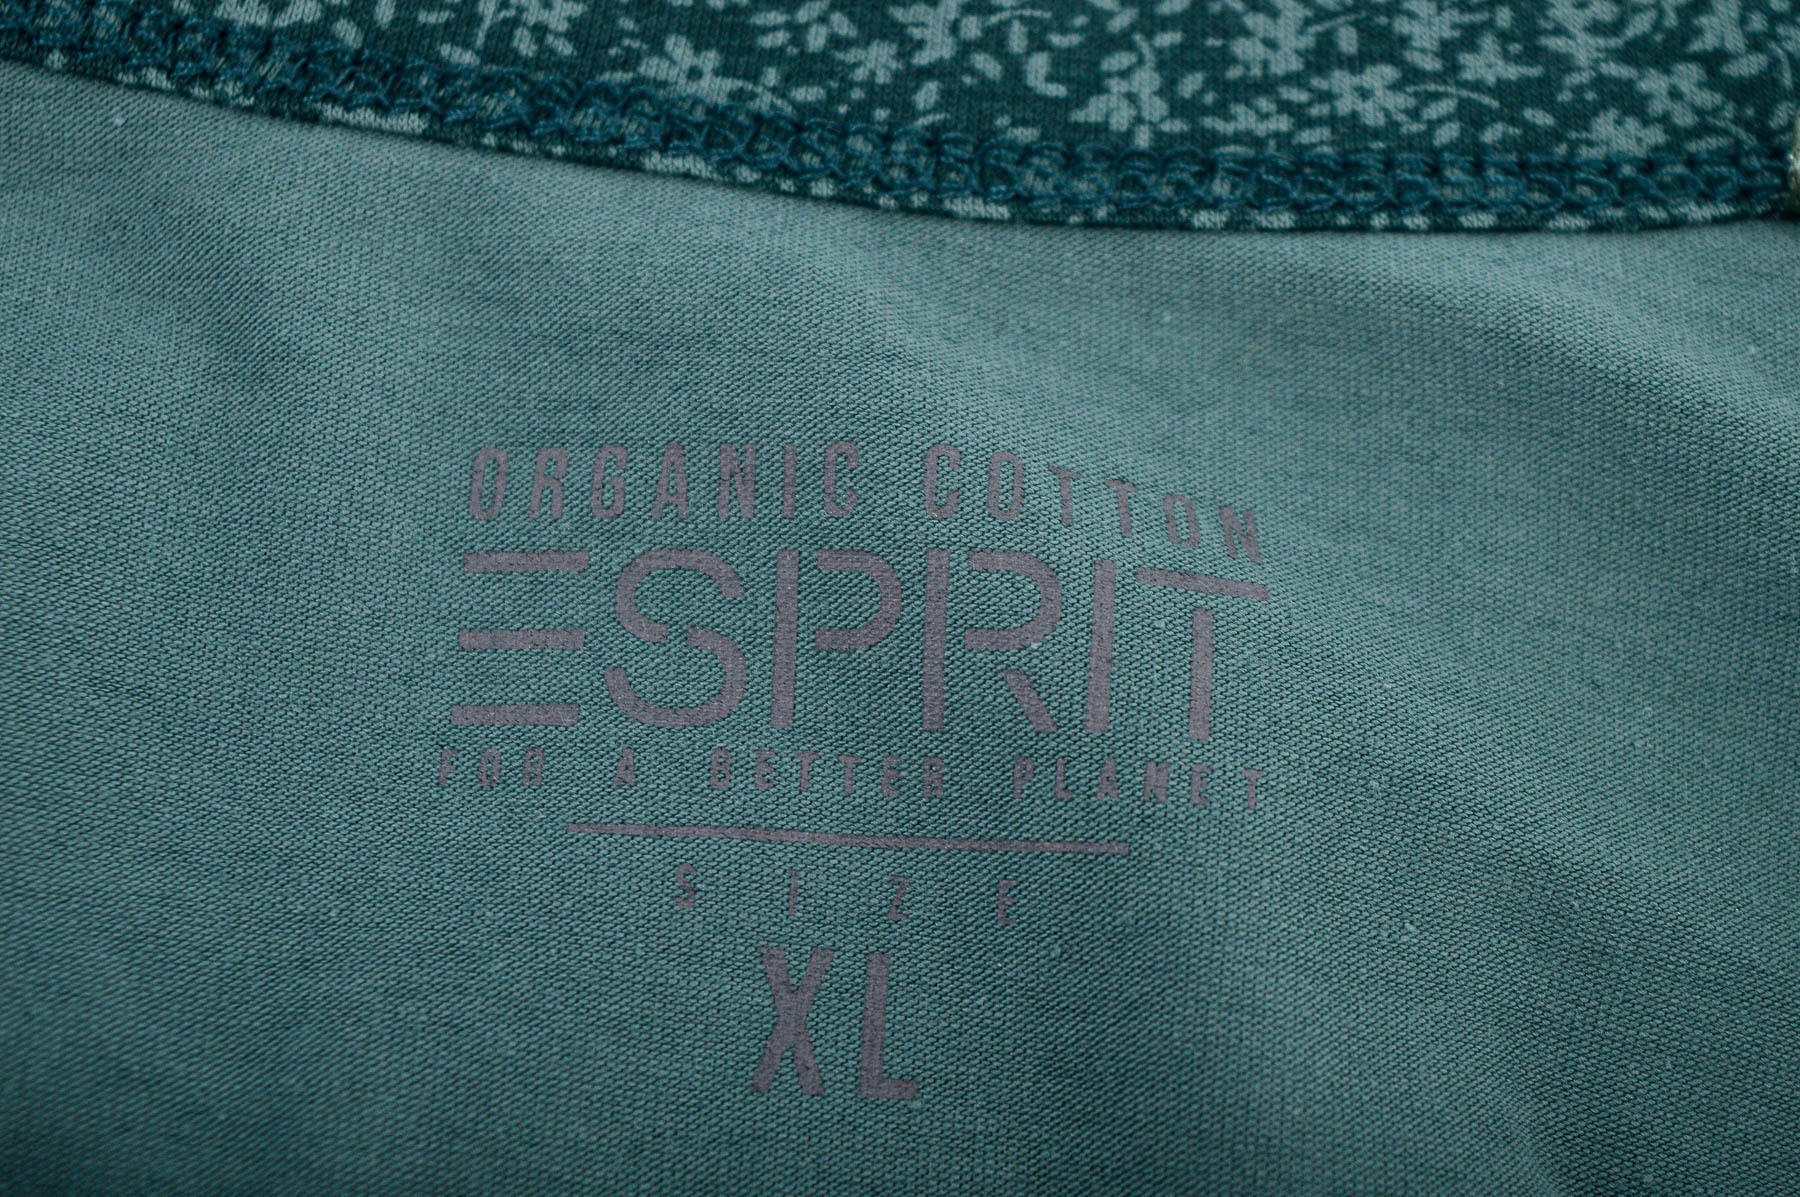 Women's blouse - ESPRIT - 2